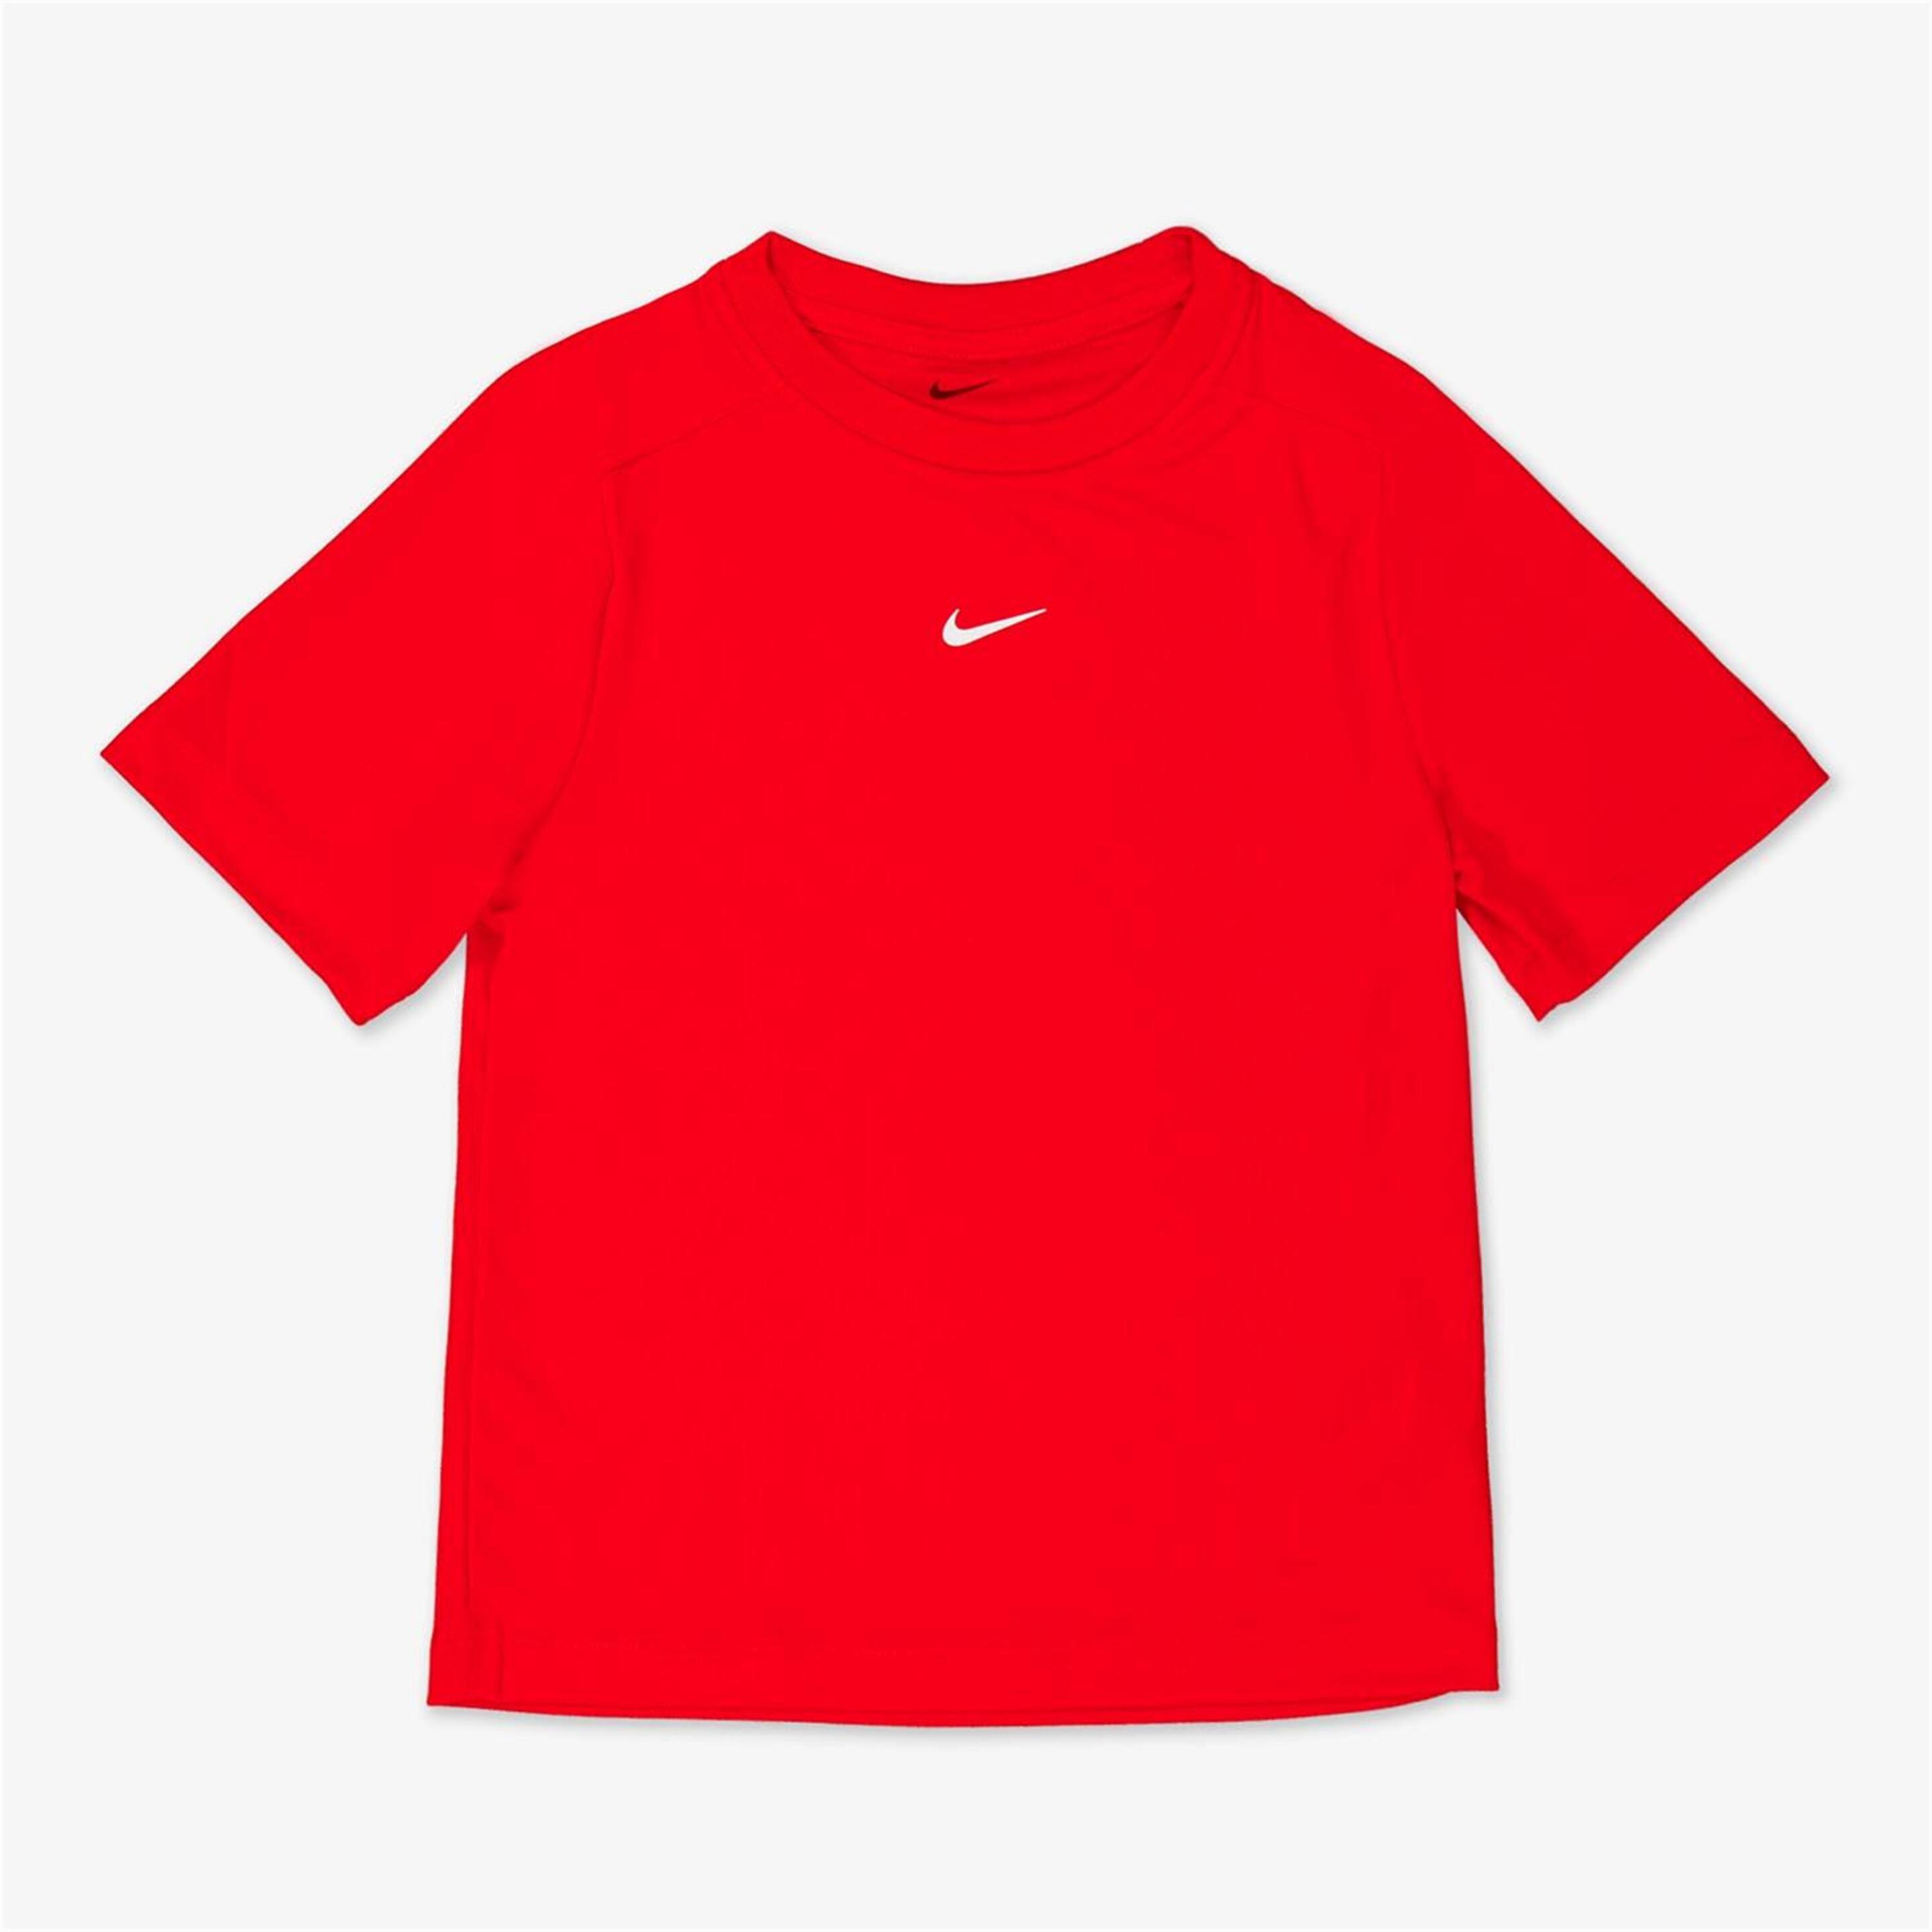 Camiseta Nike - rojo - Camiseta Running Niño